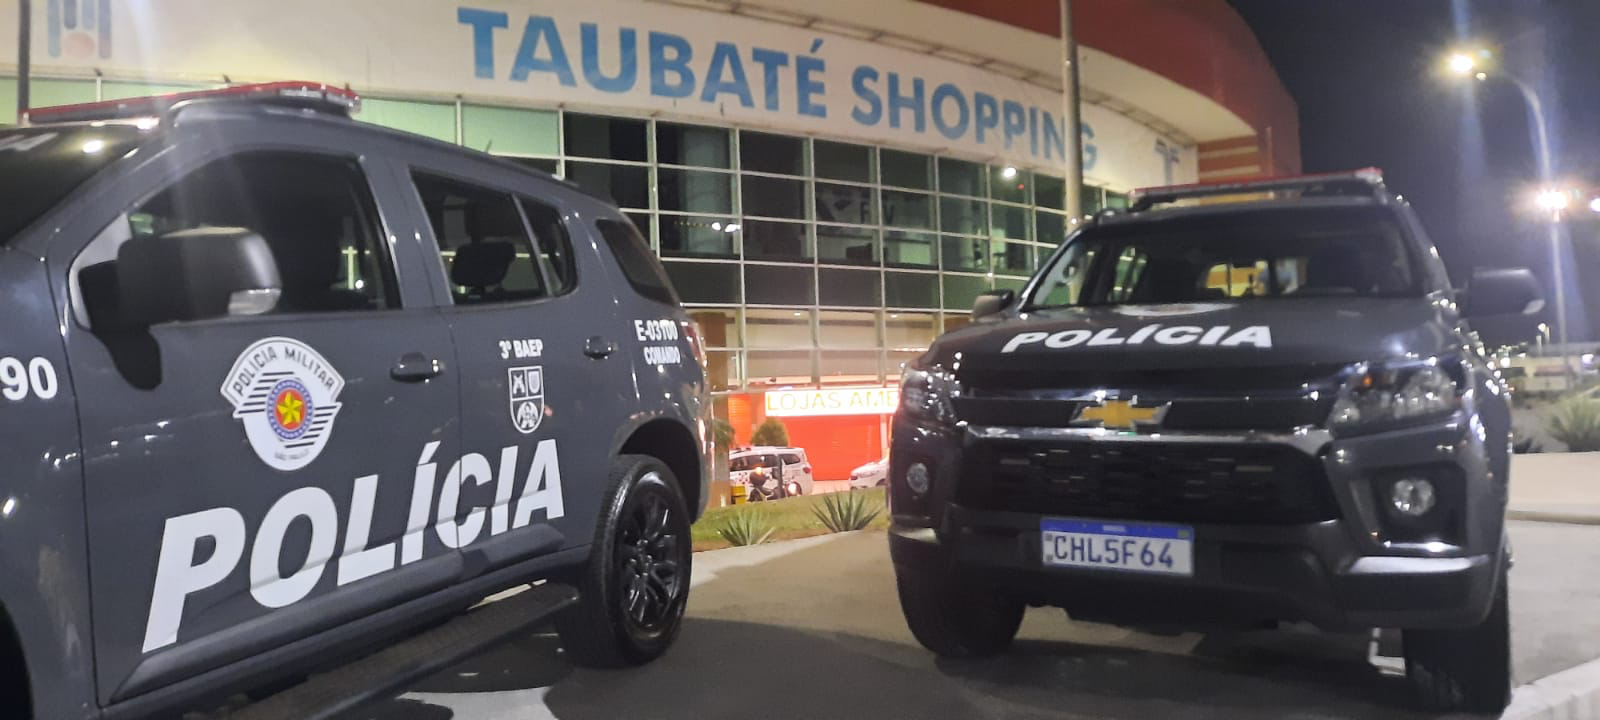 Polícia Civil prende dois suspeitos de roubo a joalheria em shopping de Taubaté 